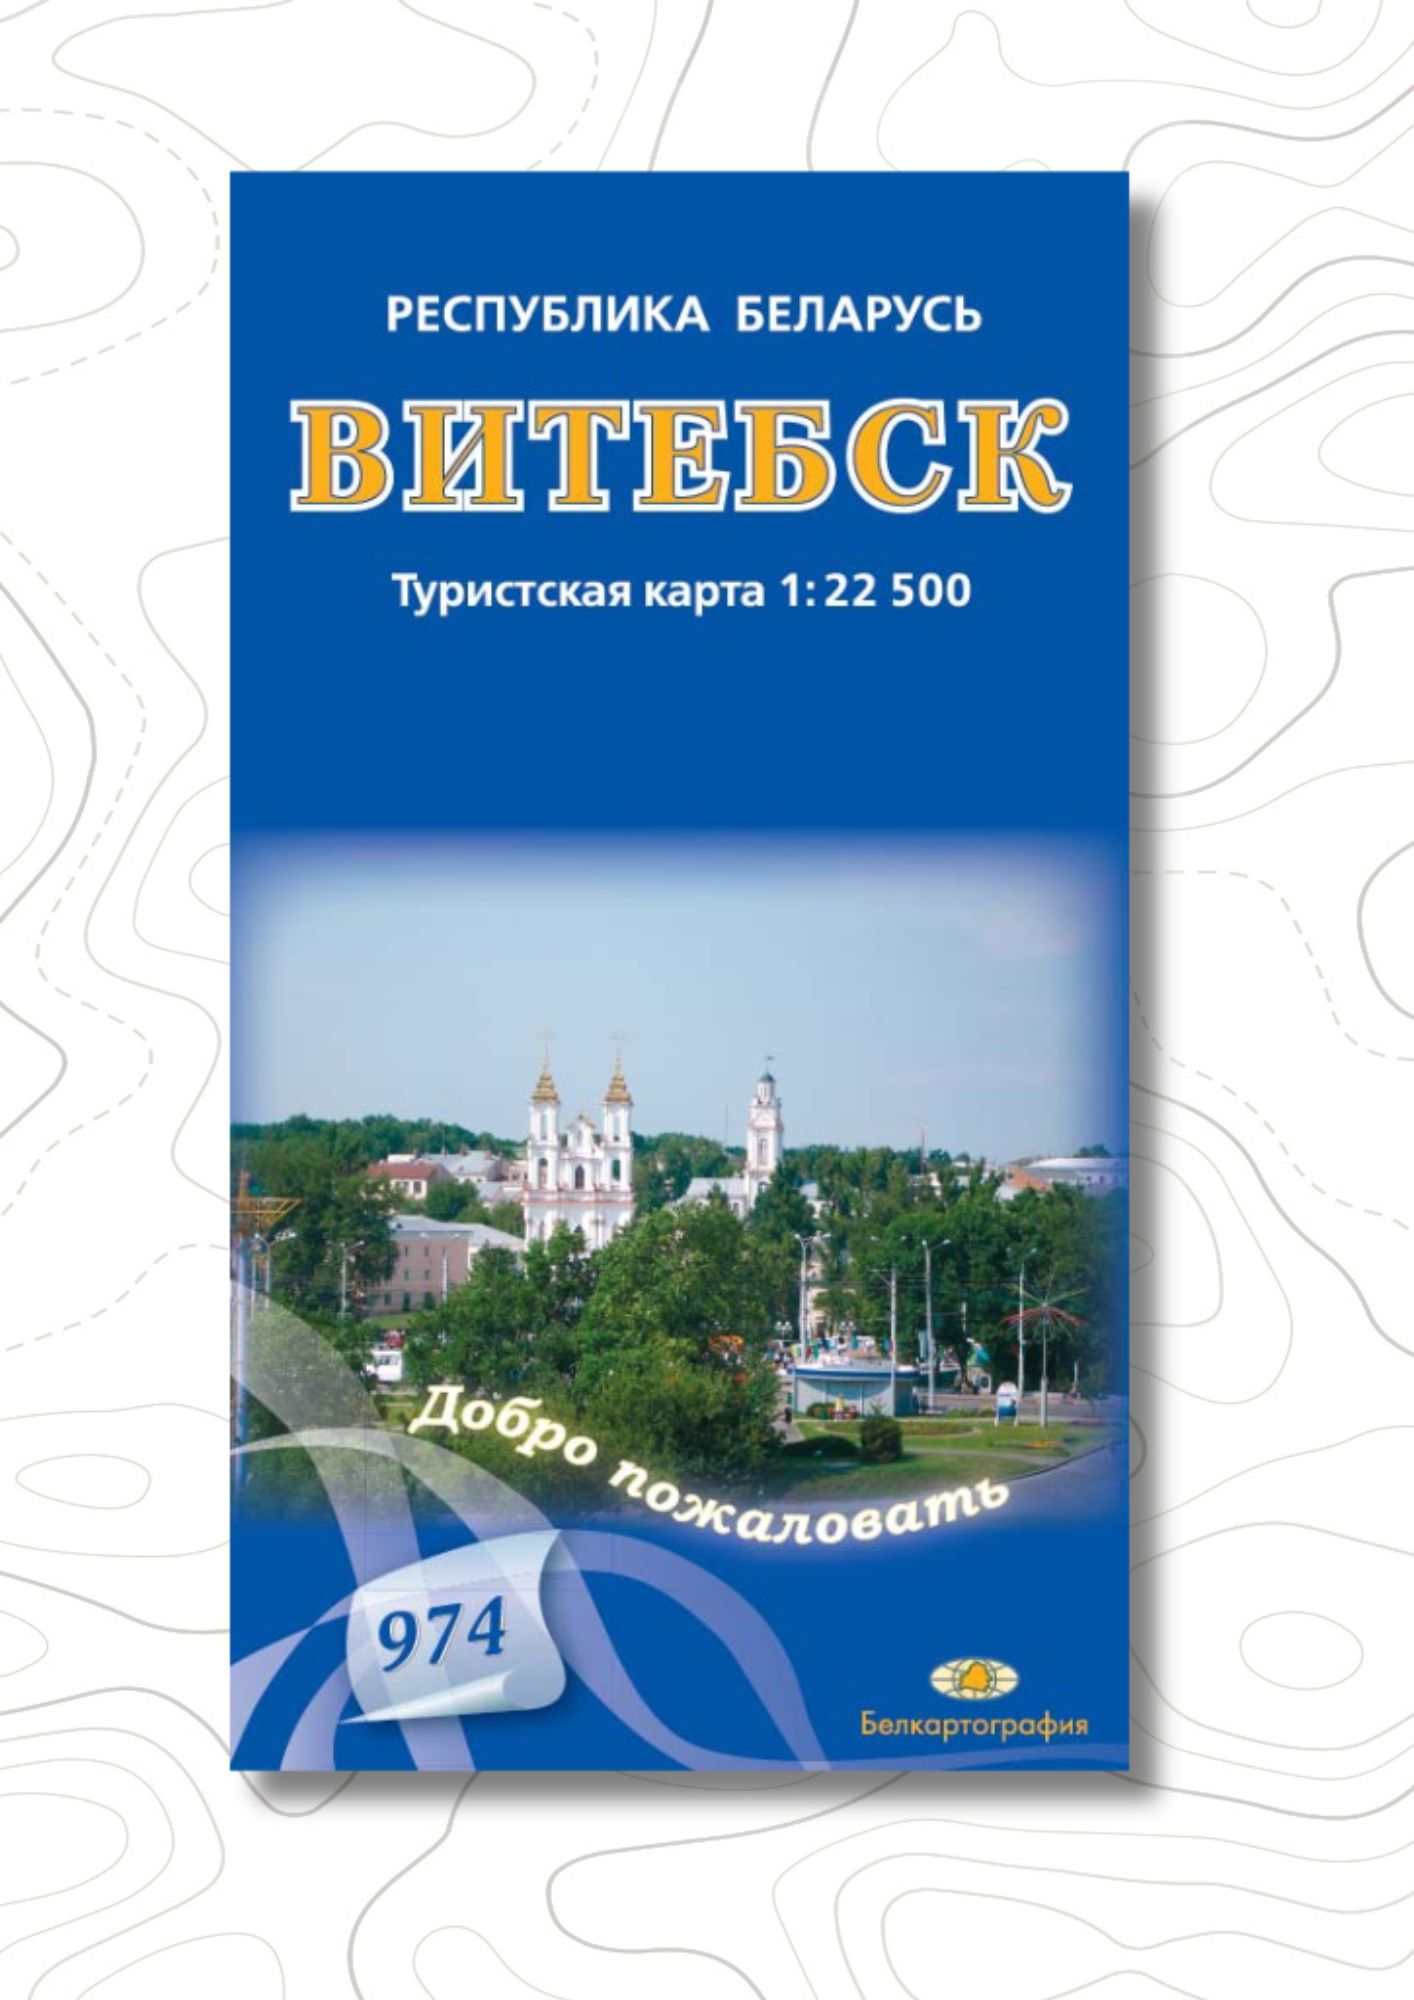 Обновлена карта «Витебск. Туристская карта».